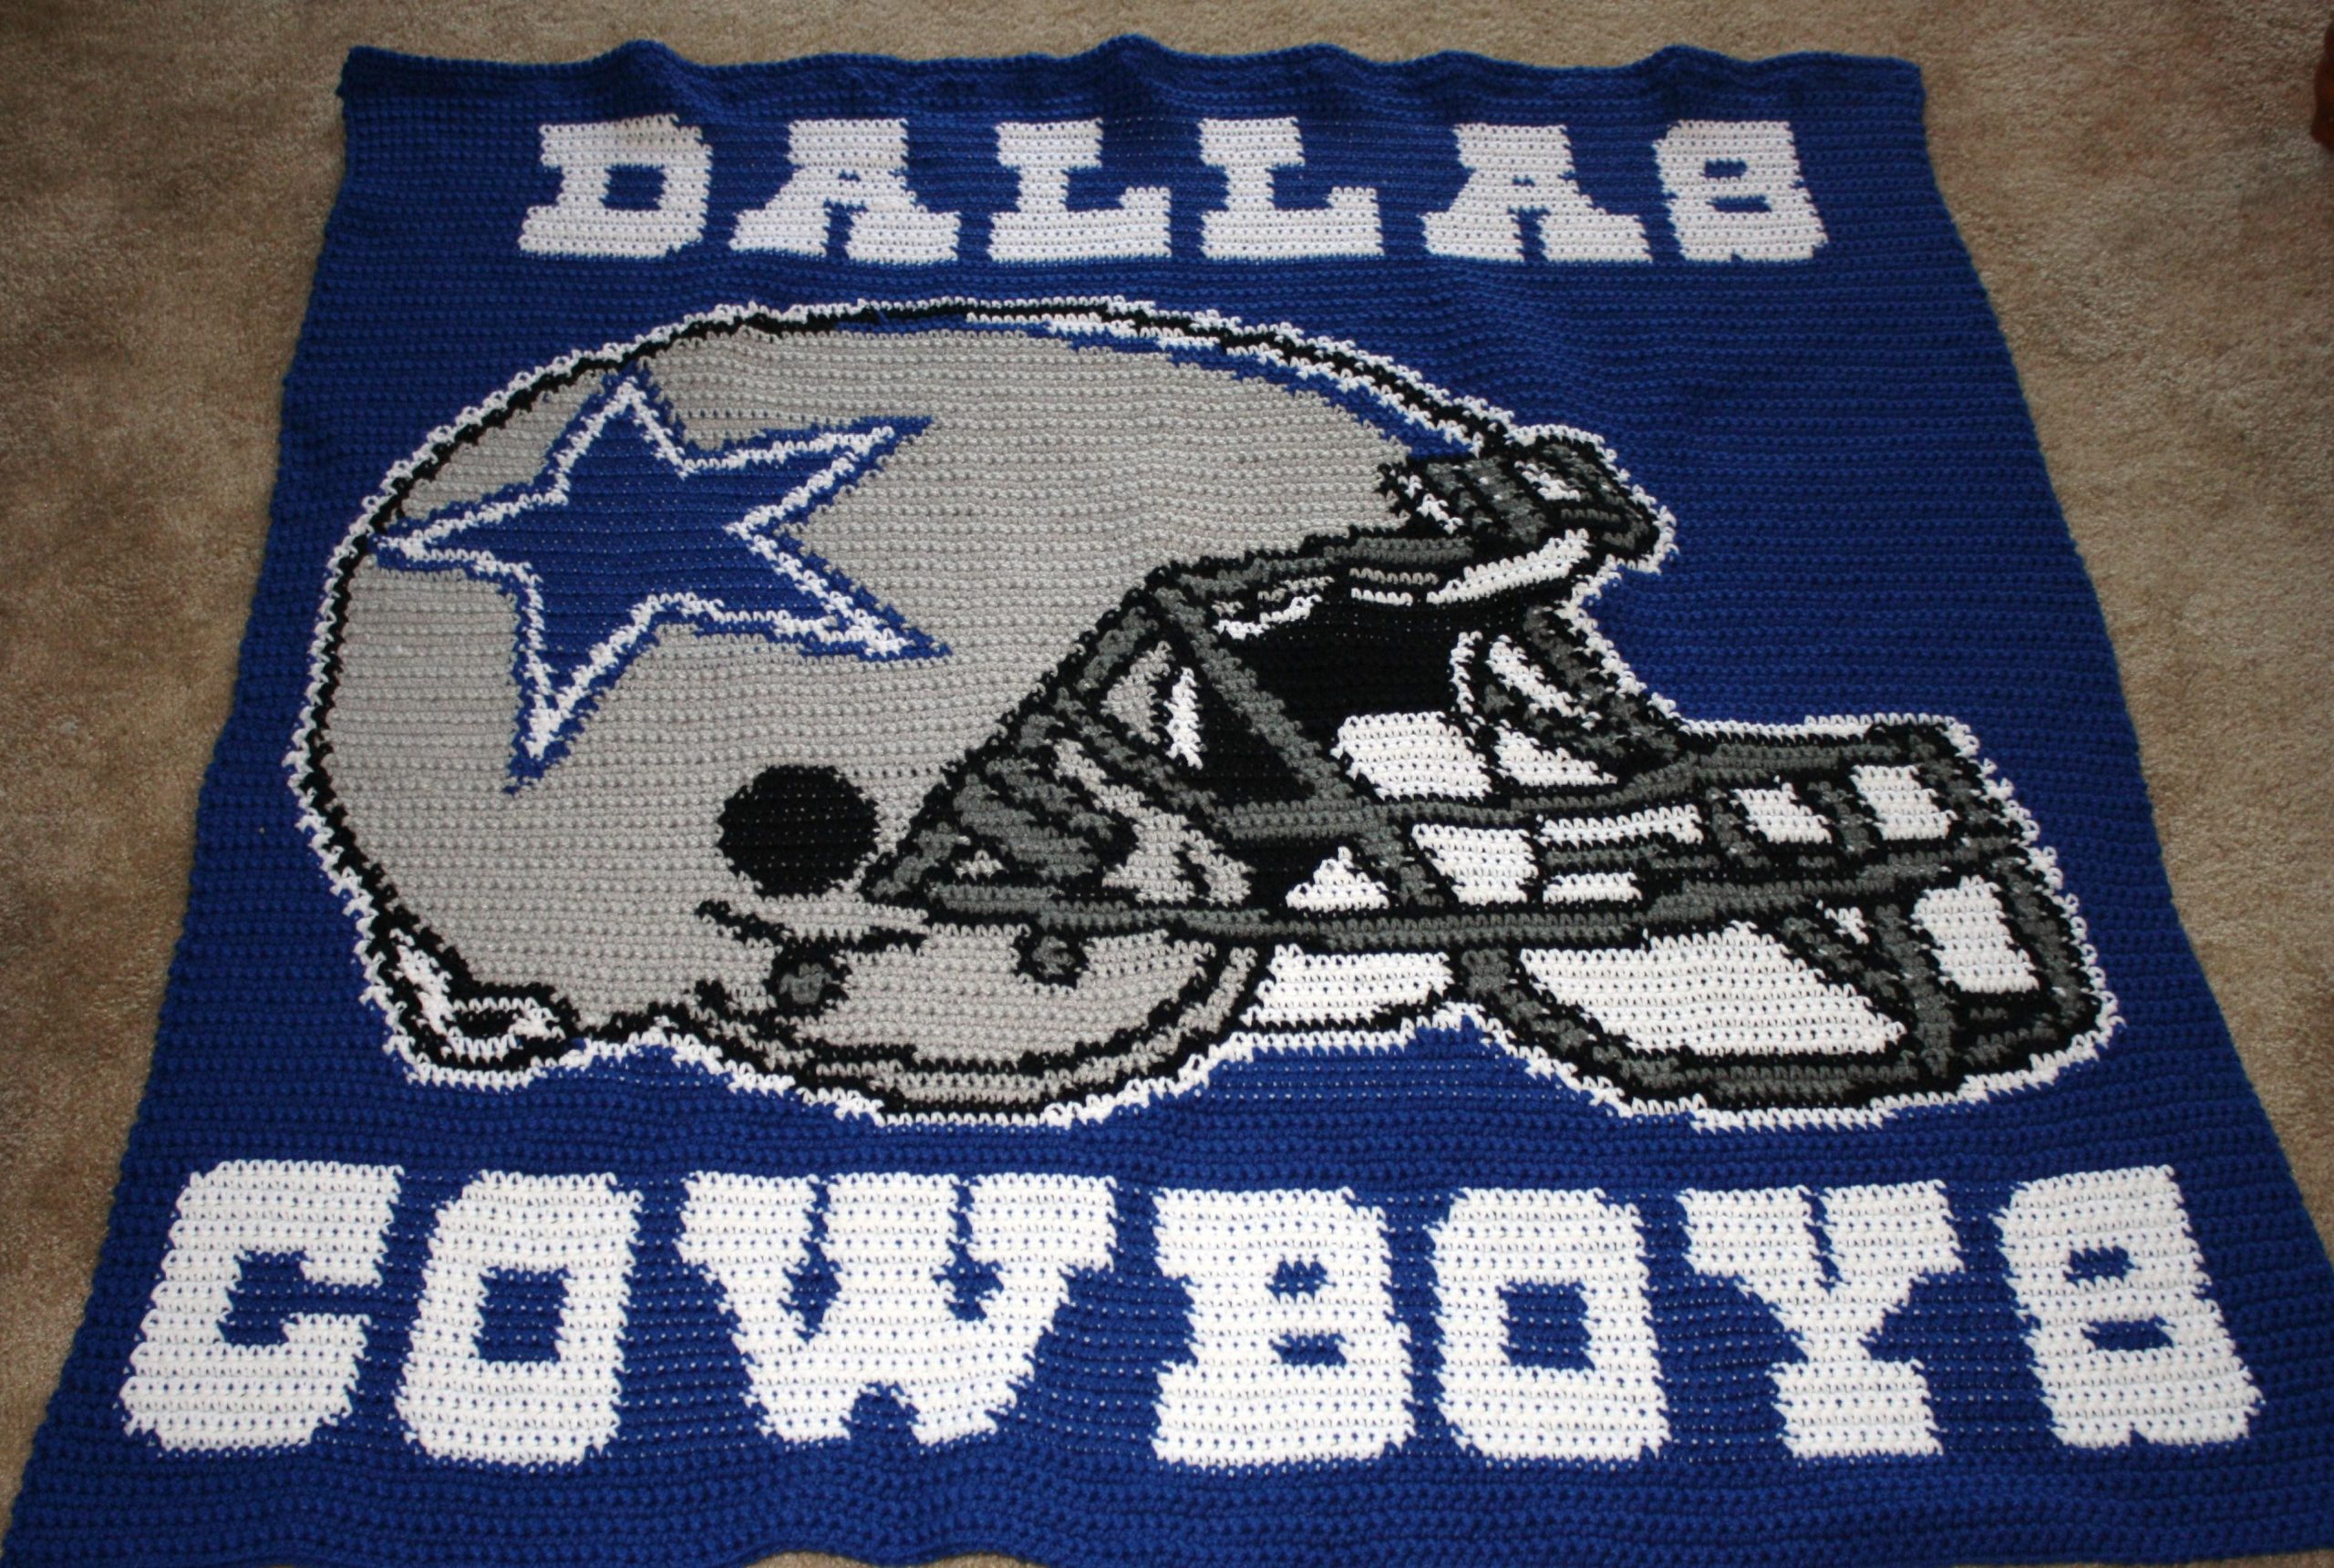 Dallas Cowboys Cricut Ideas